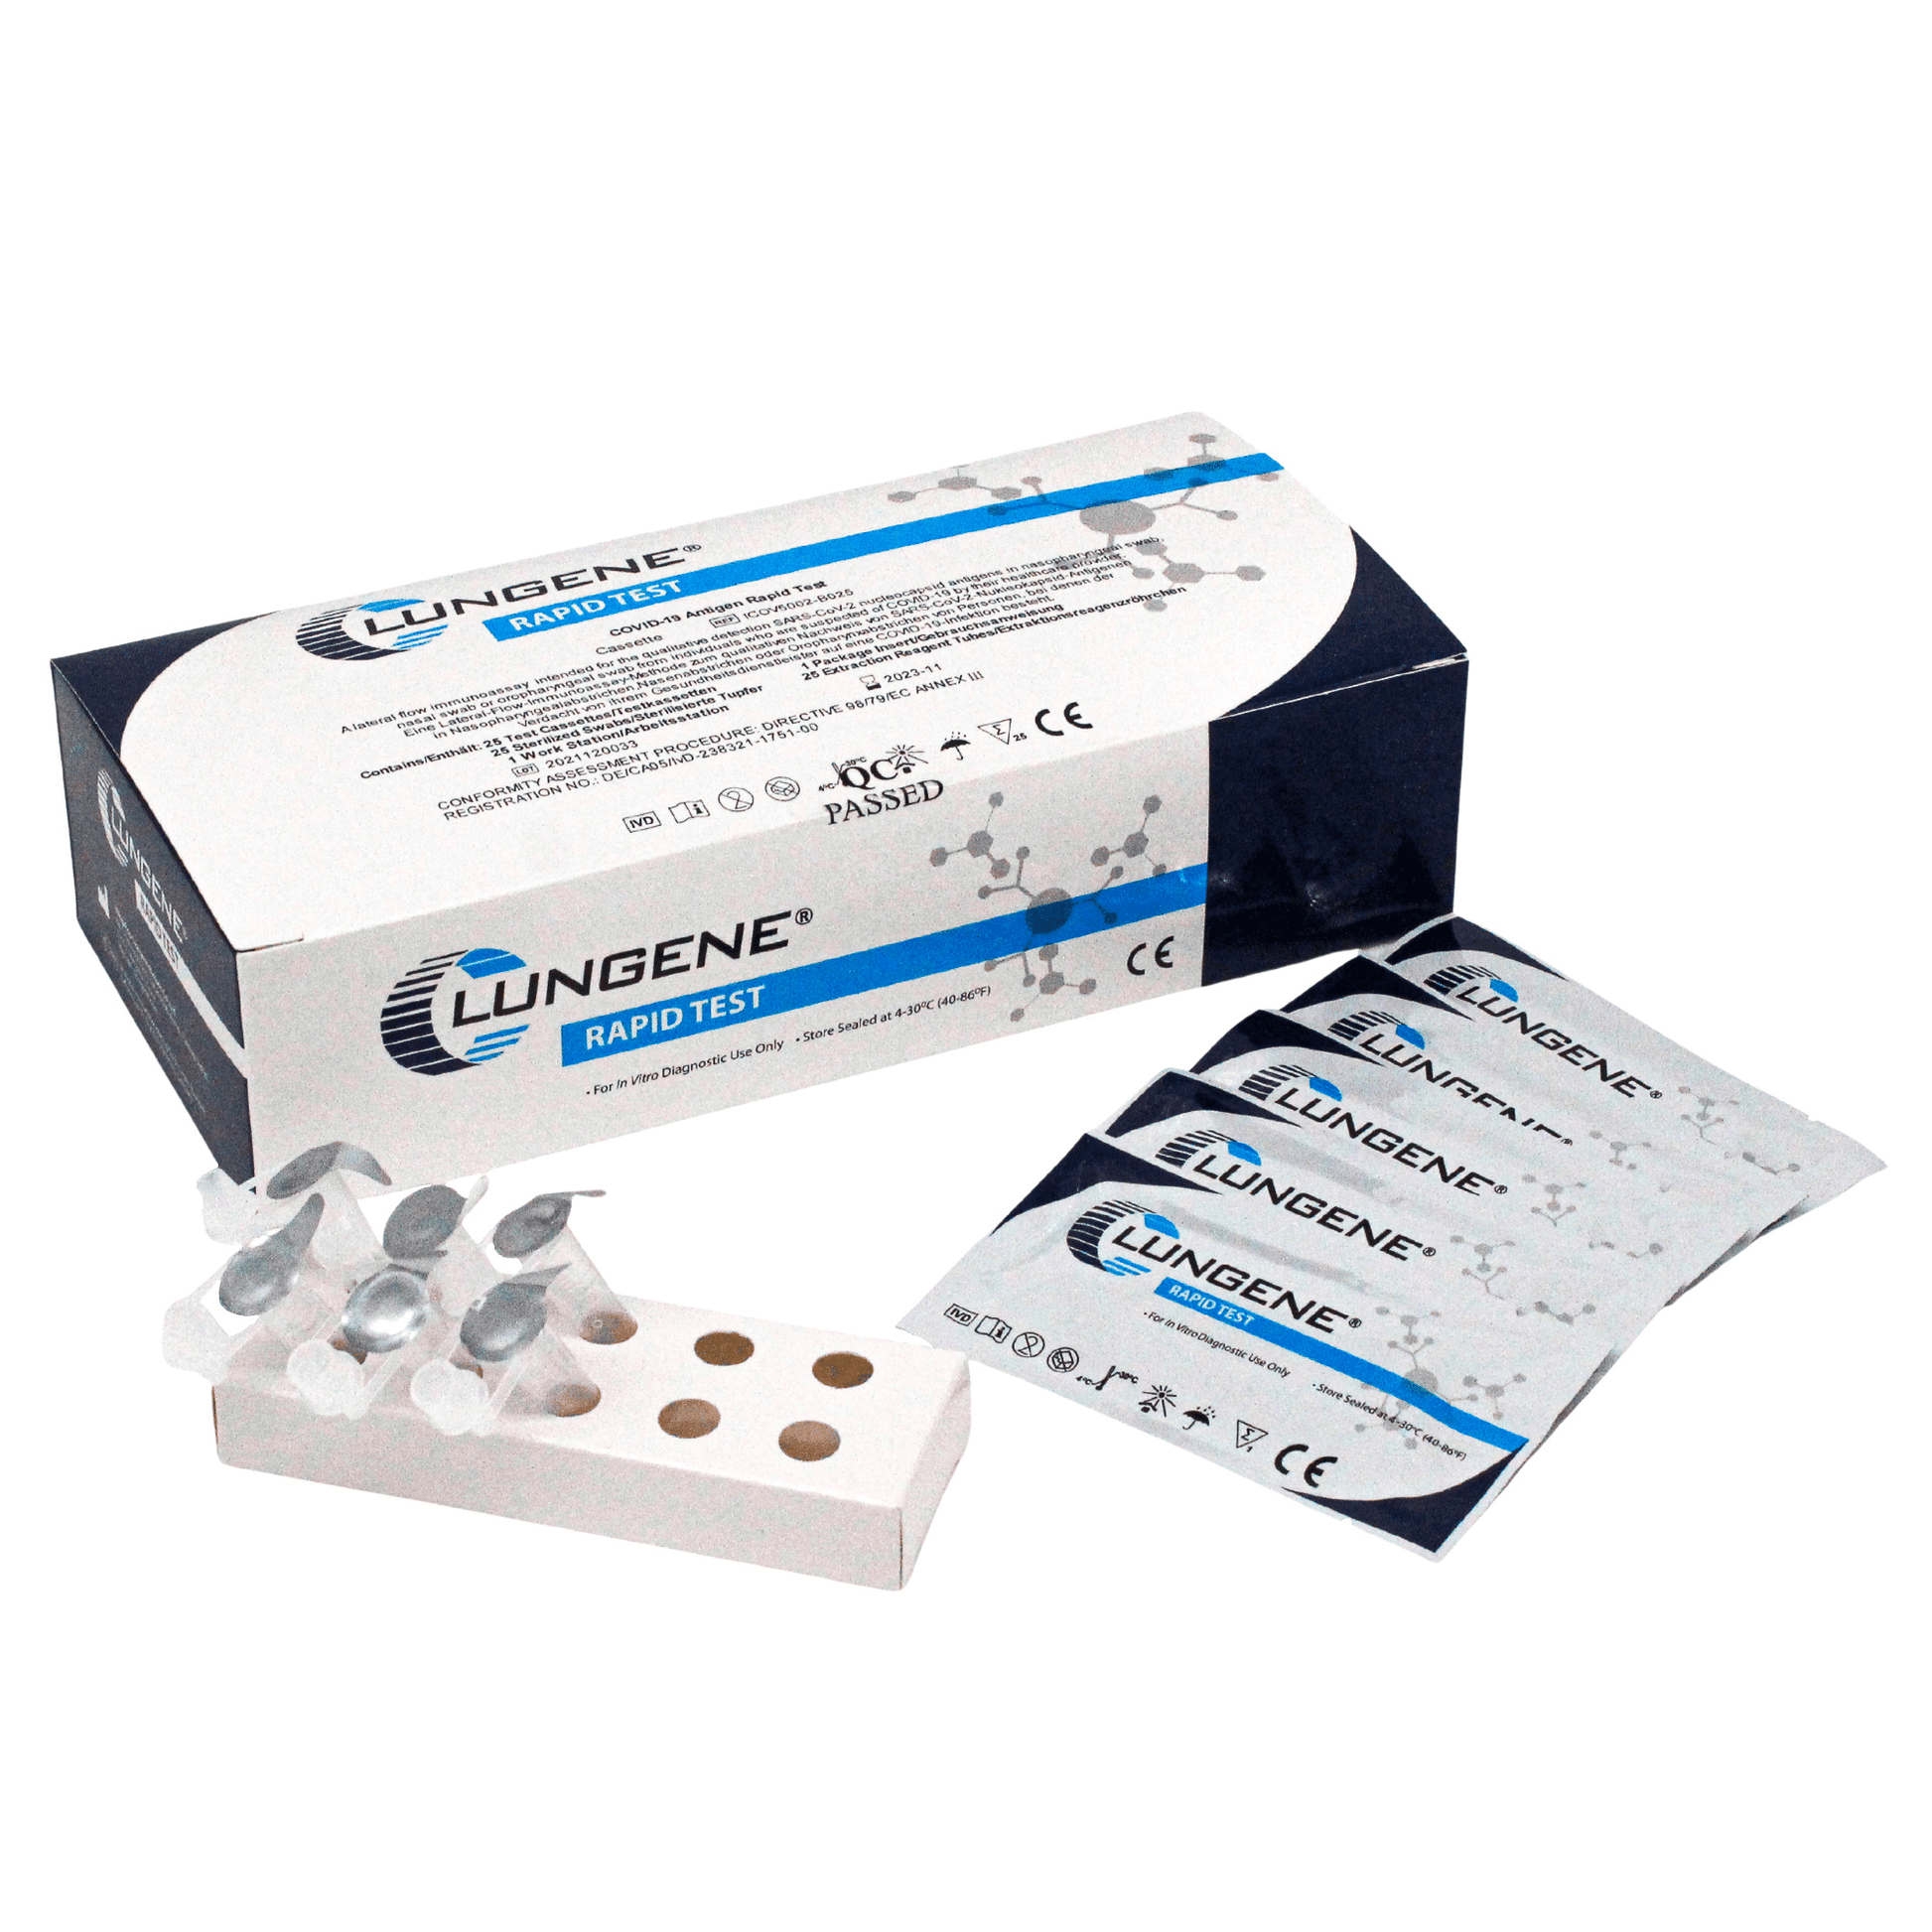 Clungene antigen rapid test 25 pieces AT079/20